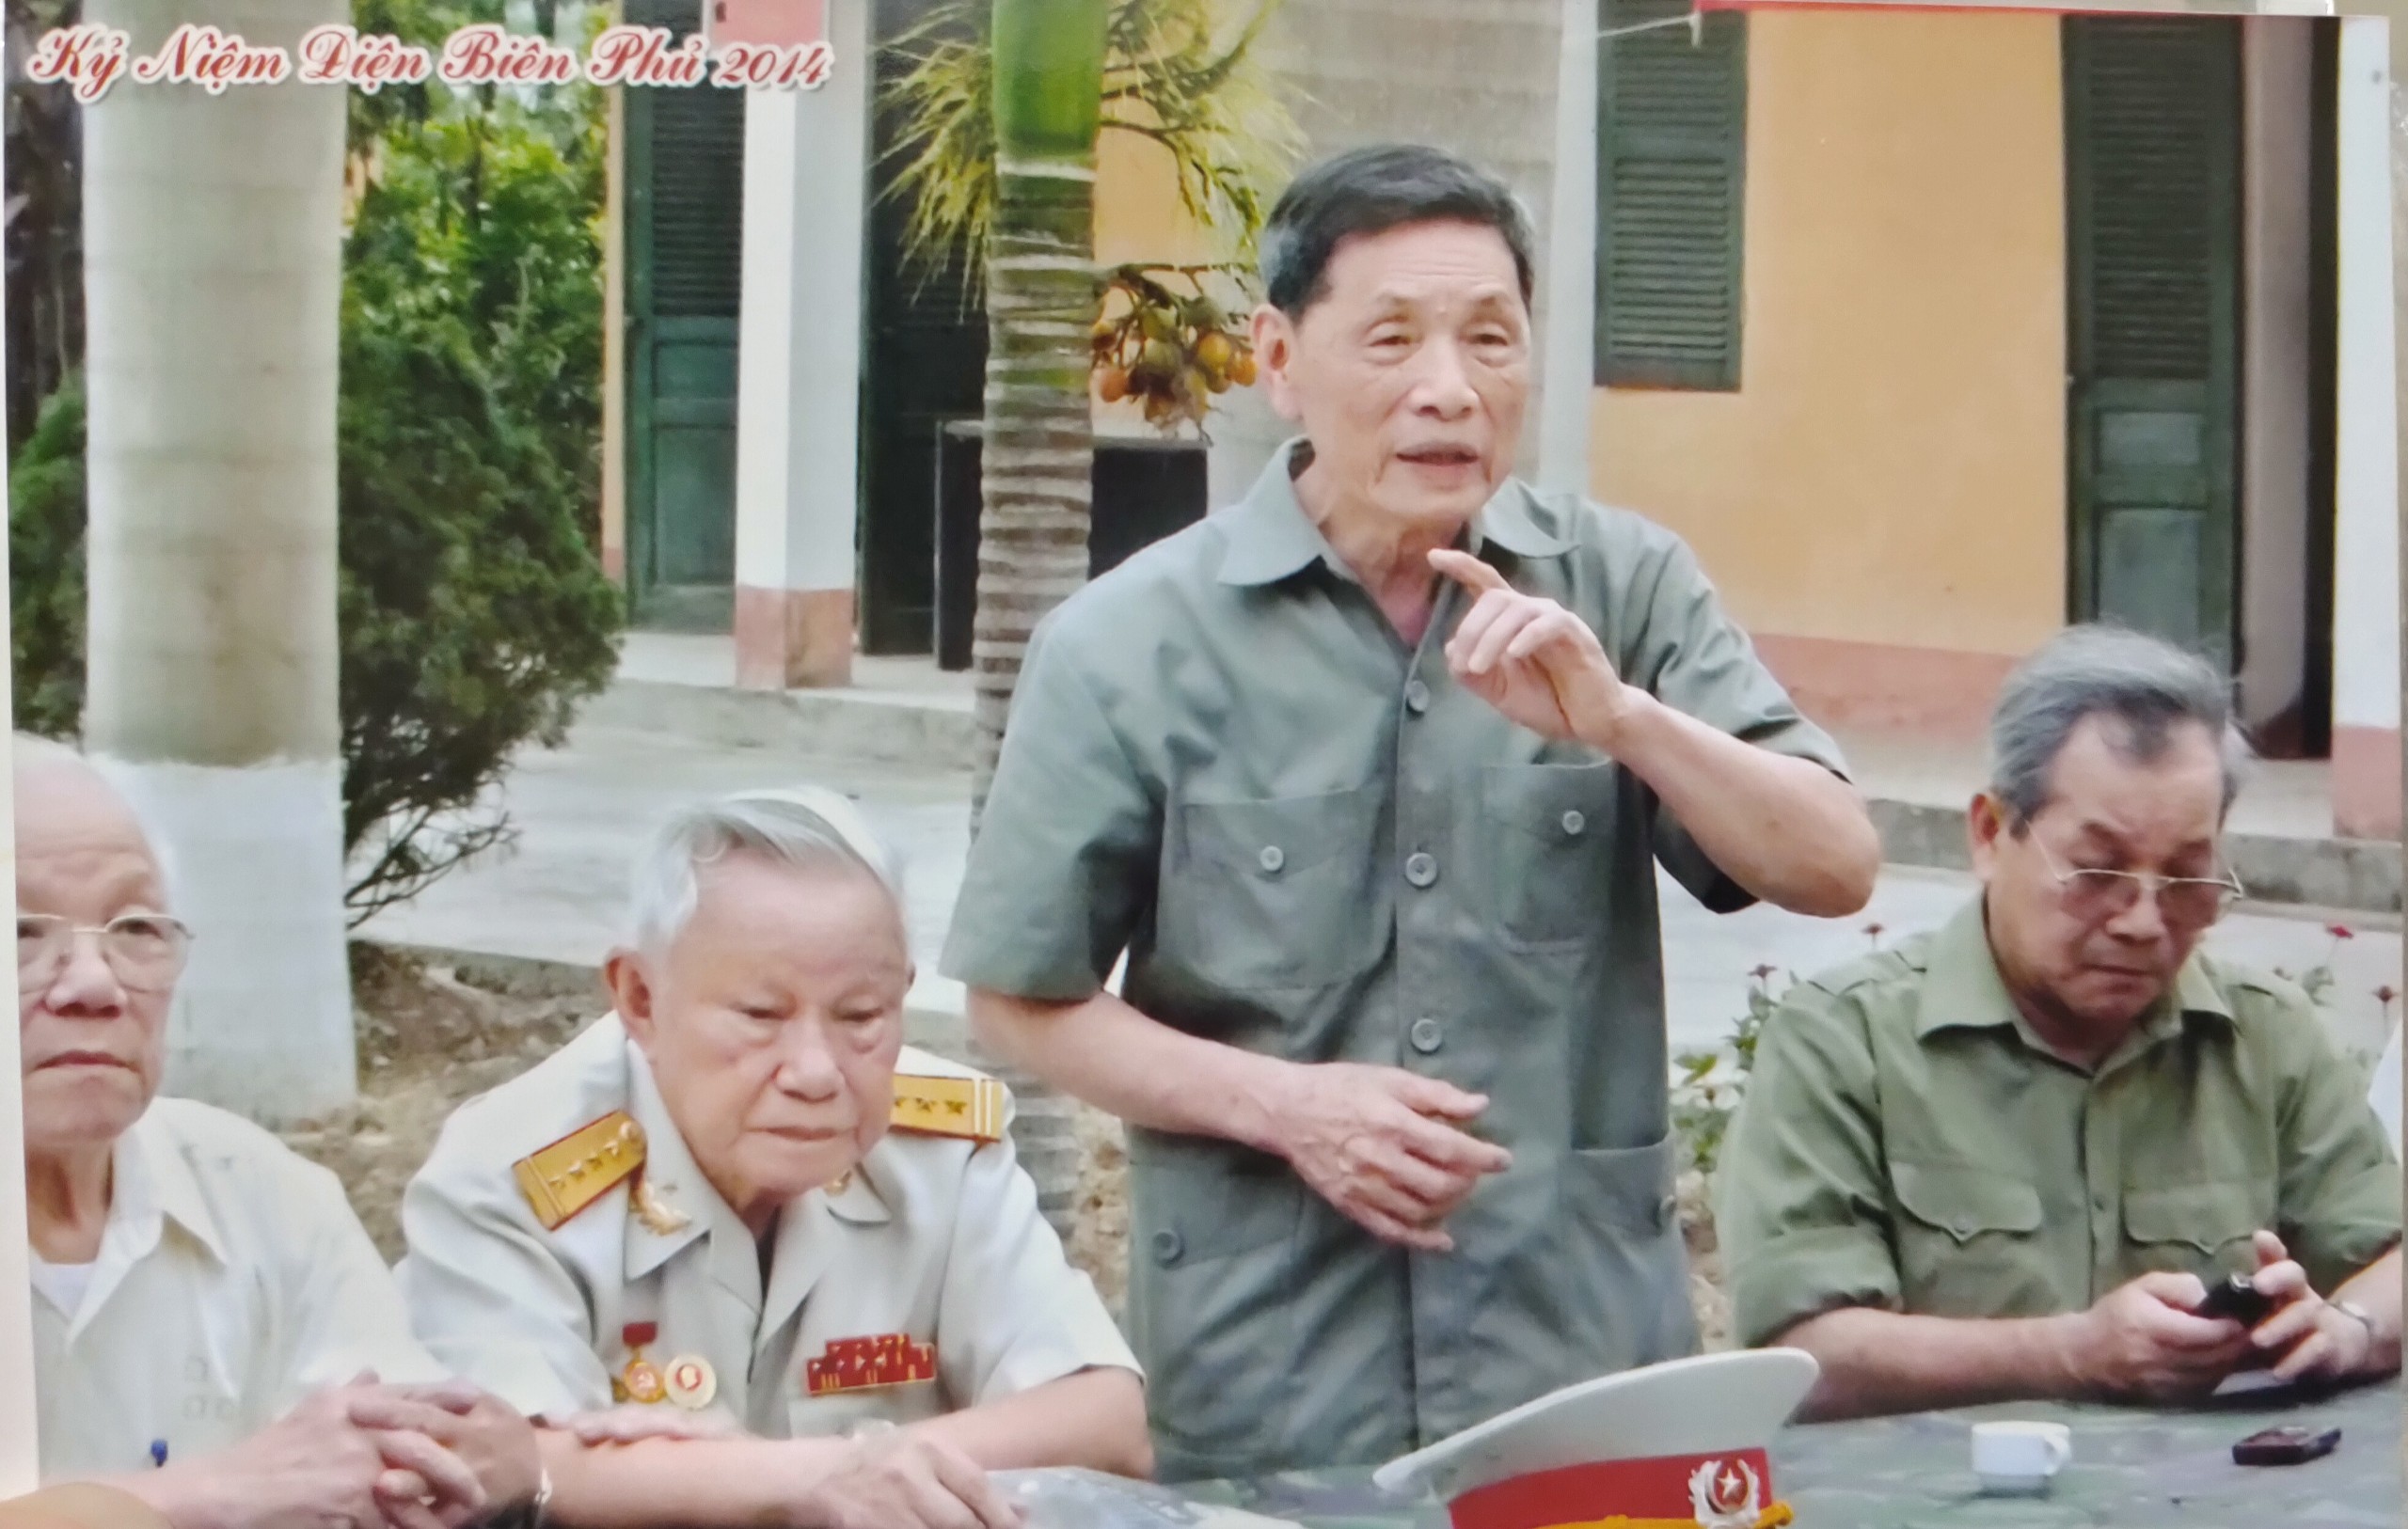 Đại tá Vũ Đình Hoè (người đứng) ôn lại kỷ niệm chiến đấu tại đồi A1 cùng đồng đội (2014). Ảnh tư liệu gia đình